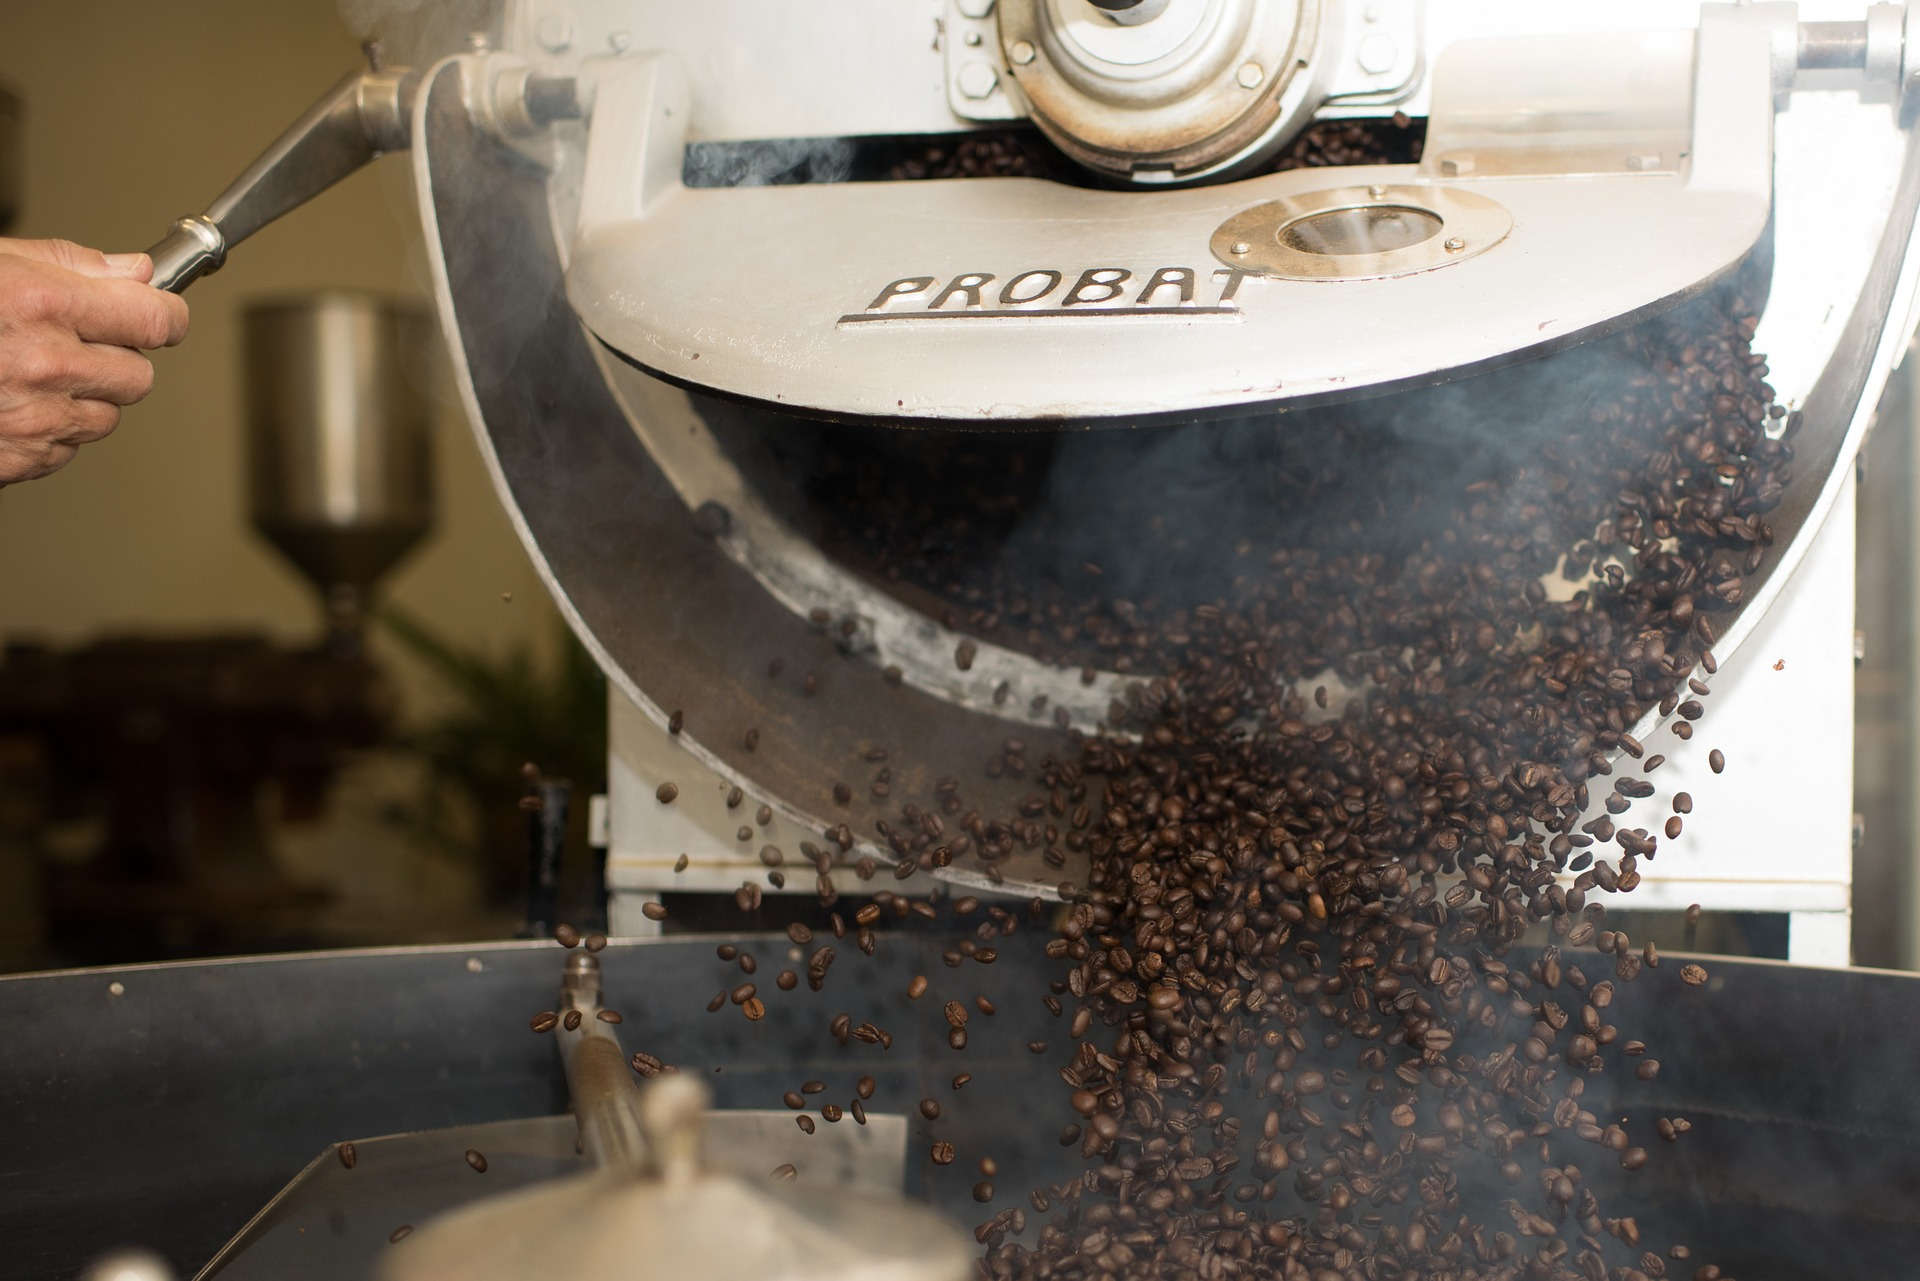 Distribuiamo direttamente i nostri caffè a bar, privati ed aziende con macchine professionali in comodato d'uso